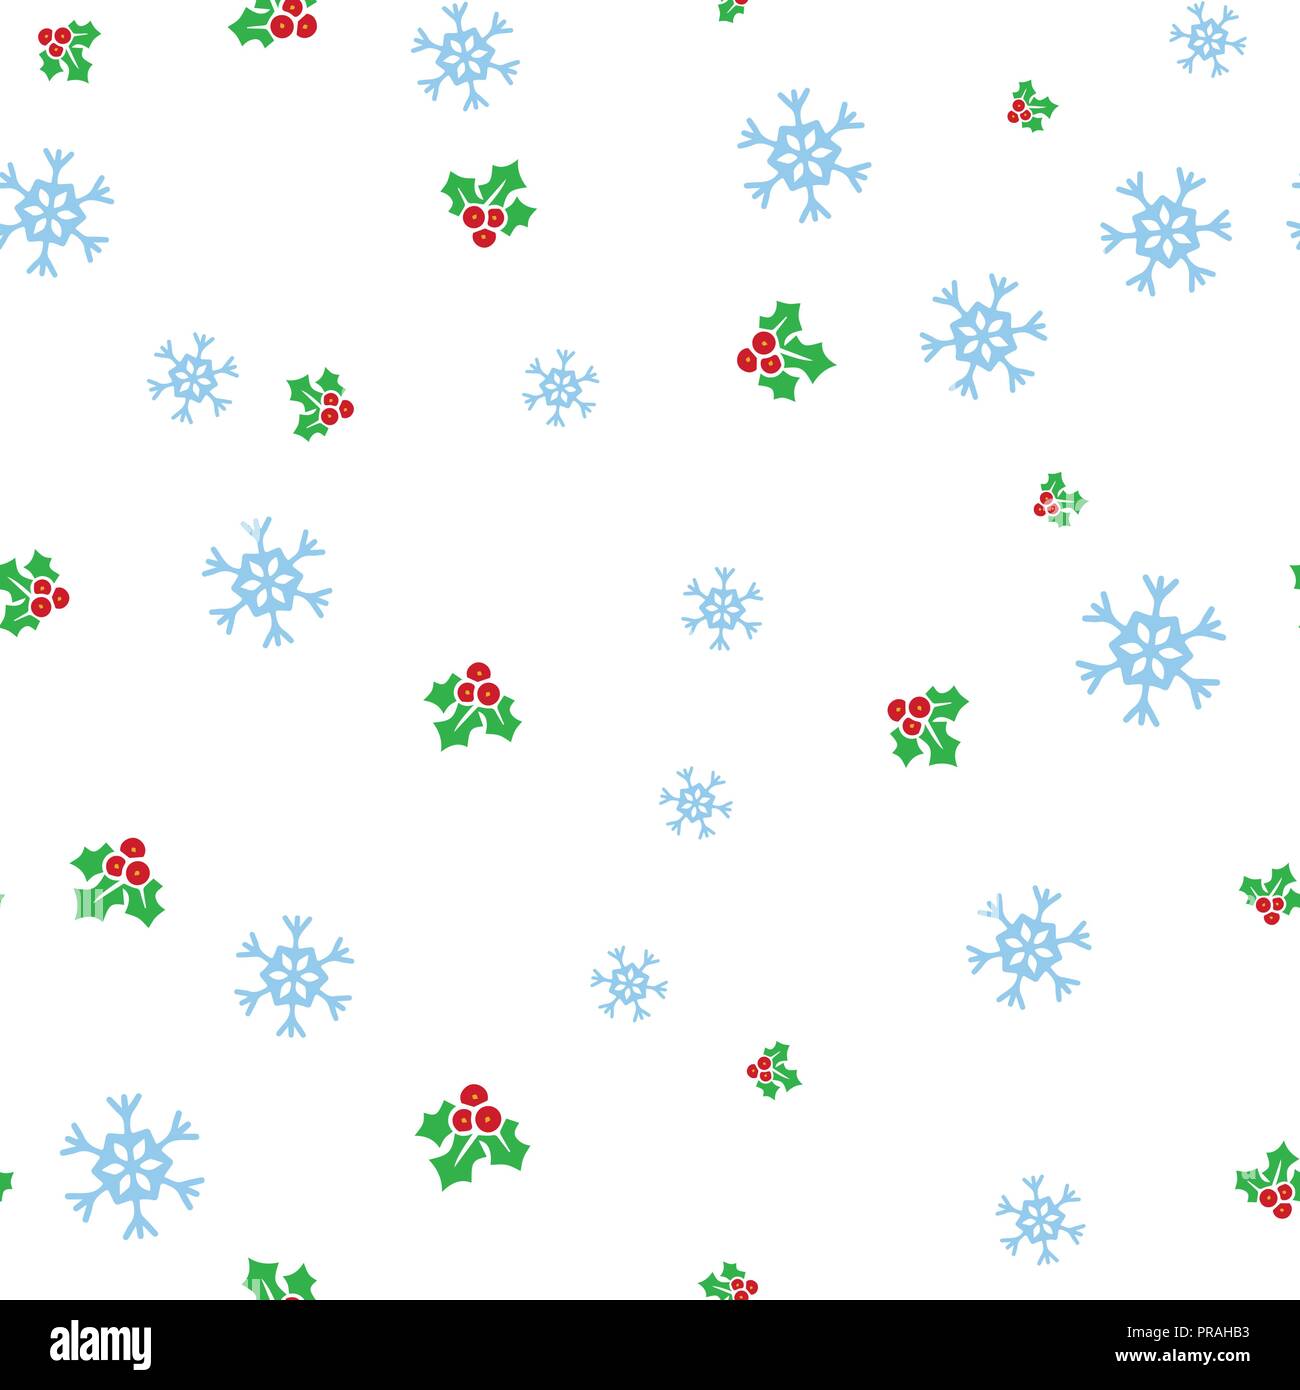 Weihnachten Mistel und Schneeflocke nahtlose Muster. Auf einem weißen Hintergrund. Vector Illustration. Stock Vektor